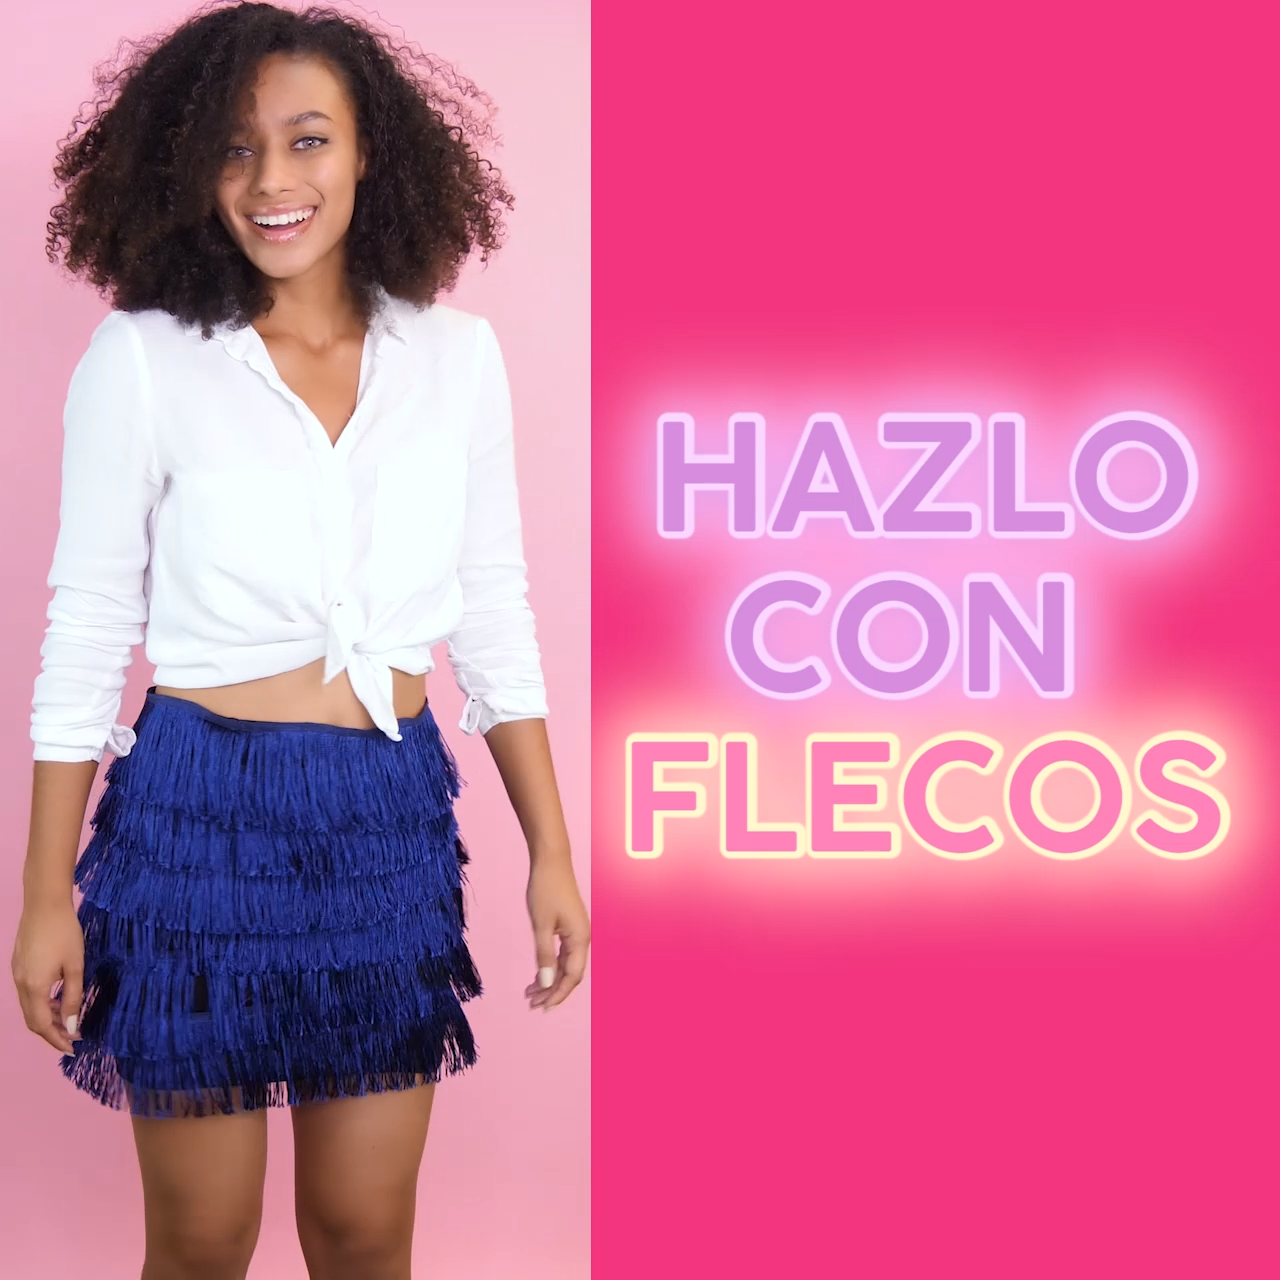 Hacks con flecos -   23 DIY Clothes Videos scarf ideas